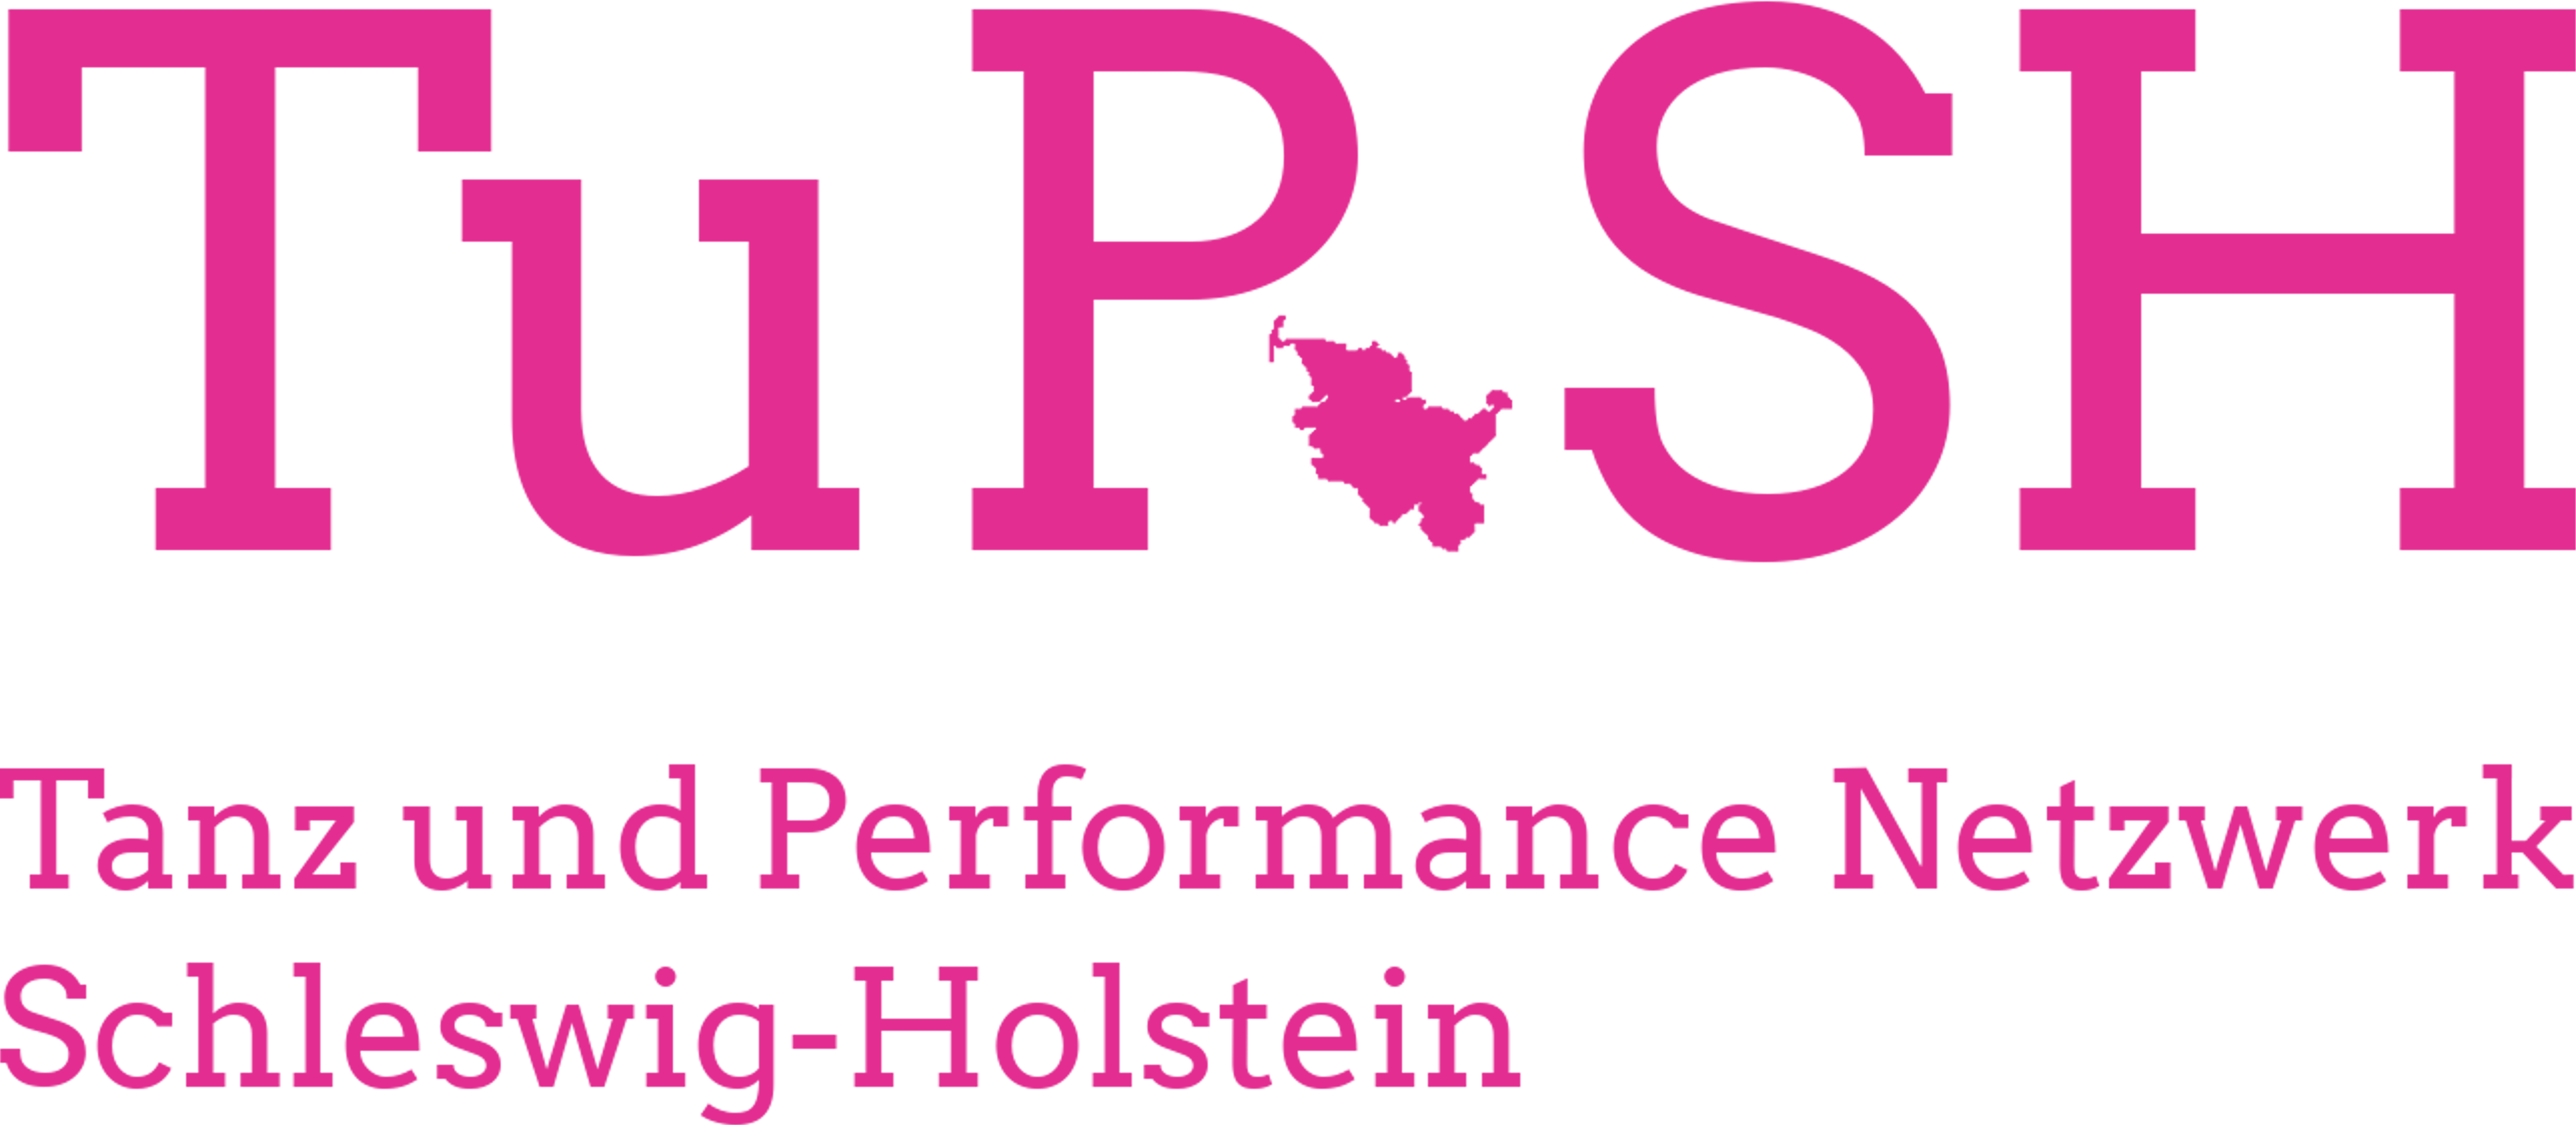 Tanz und Performance Netzwerk Schleswig-Holstein Logo